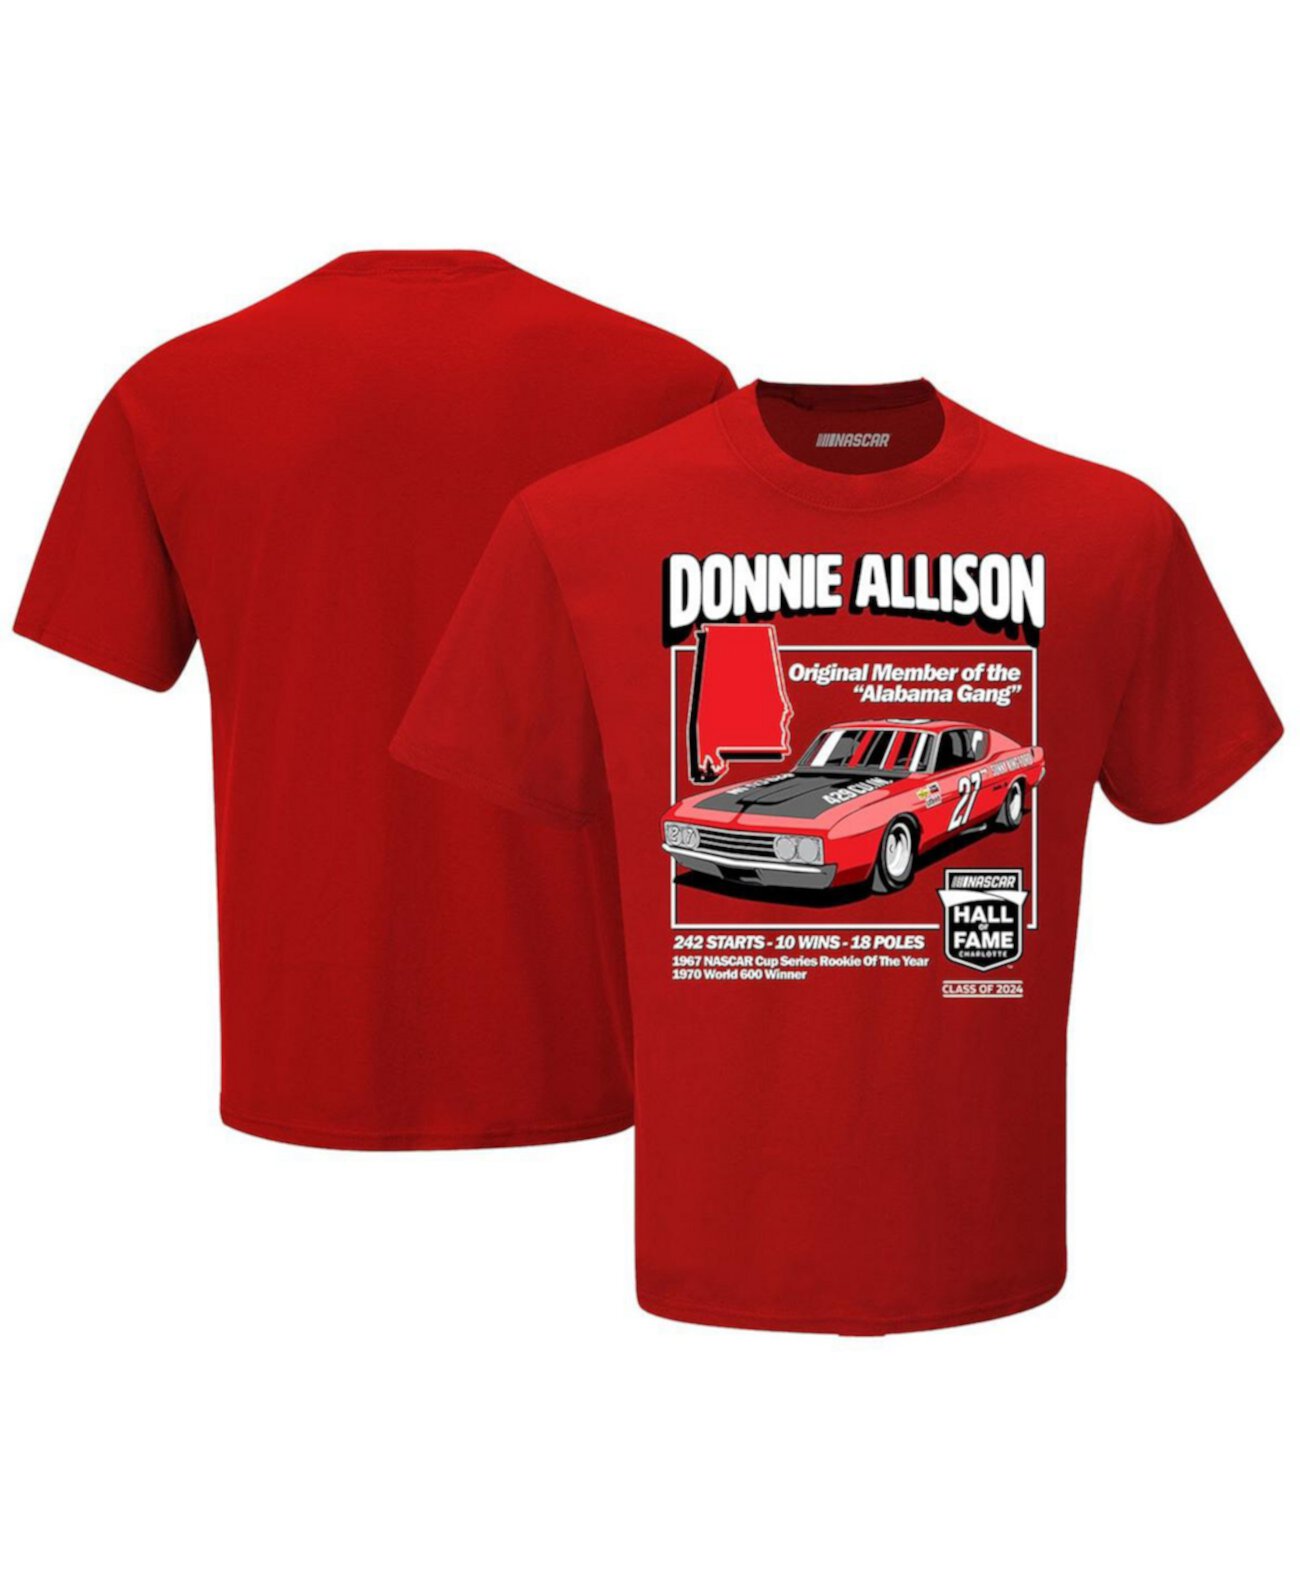 Мужская красная футболка Donnie Allison NASCAR Hall of Fame Checkered Flag Sports